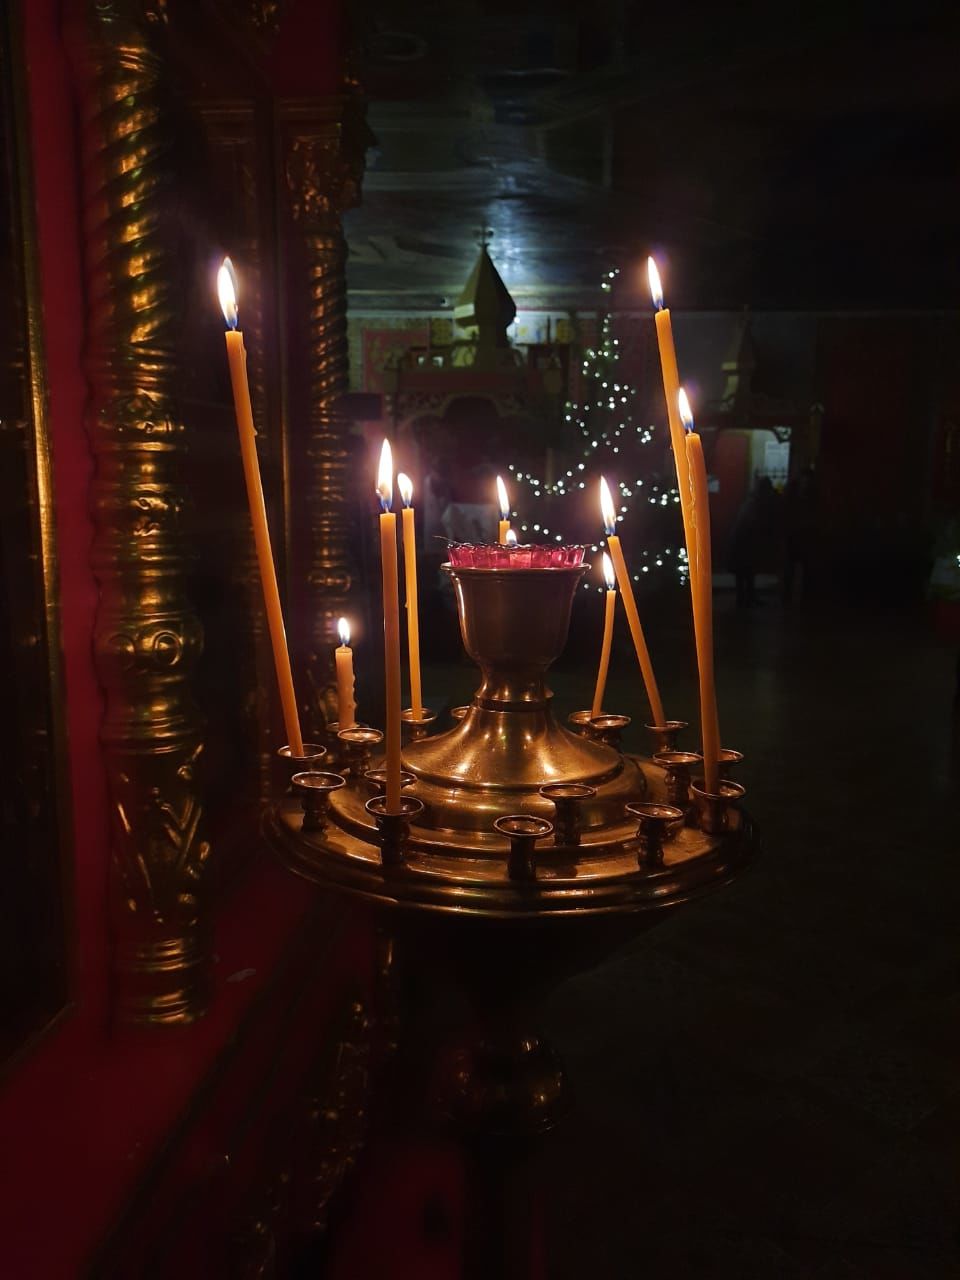 В Свято-Авраамиевском храме состоялось Рождественское Богослужение.